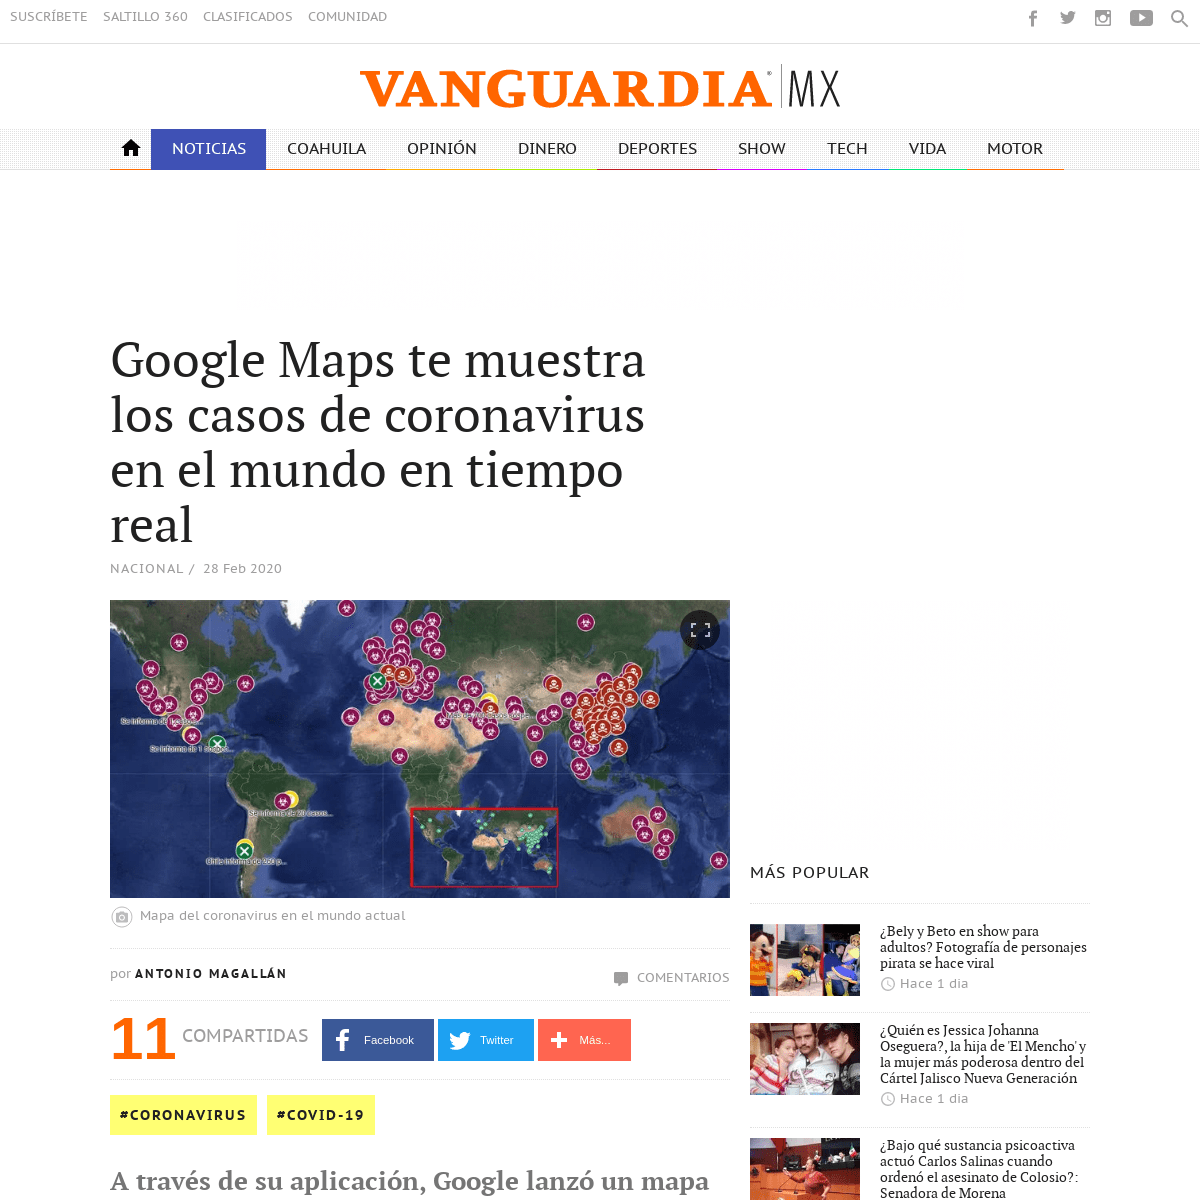 Google Maps te muestra los casos de coronavirus en el mundo en tiempo